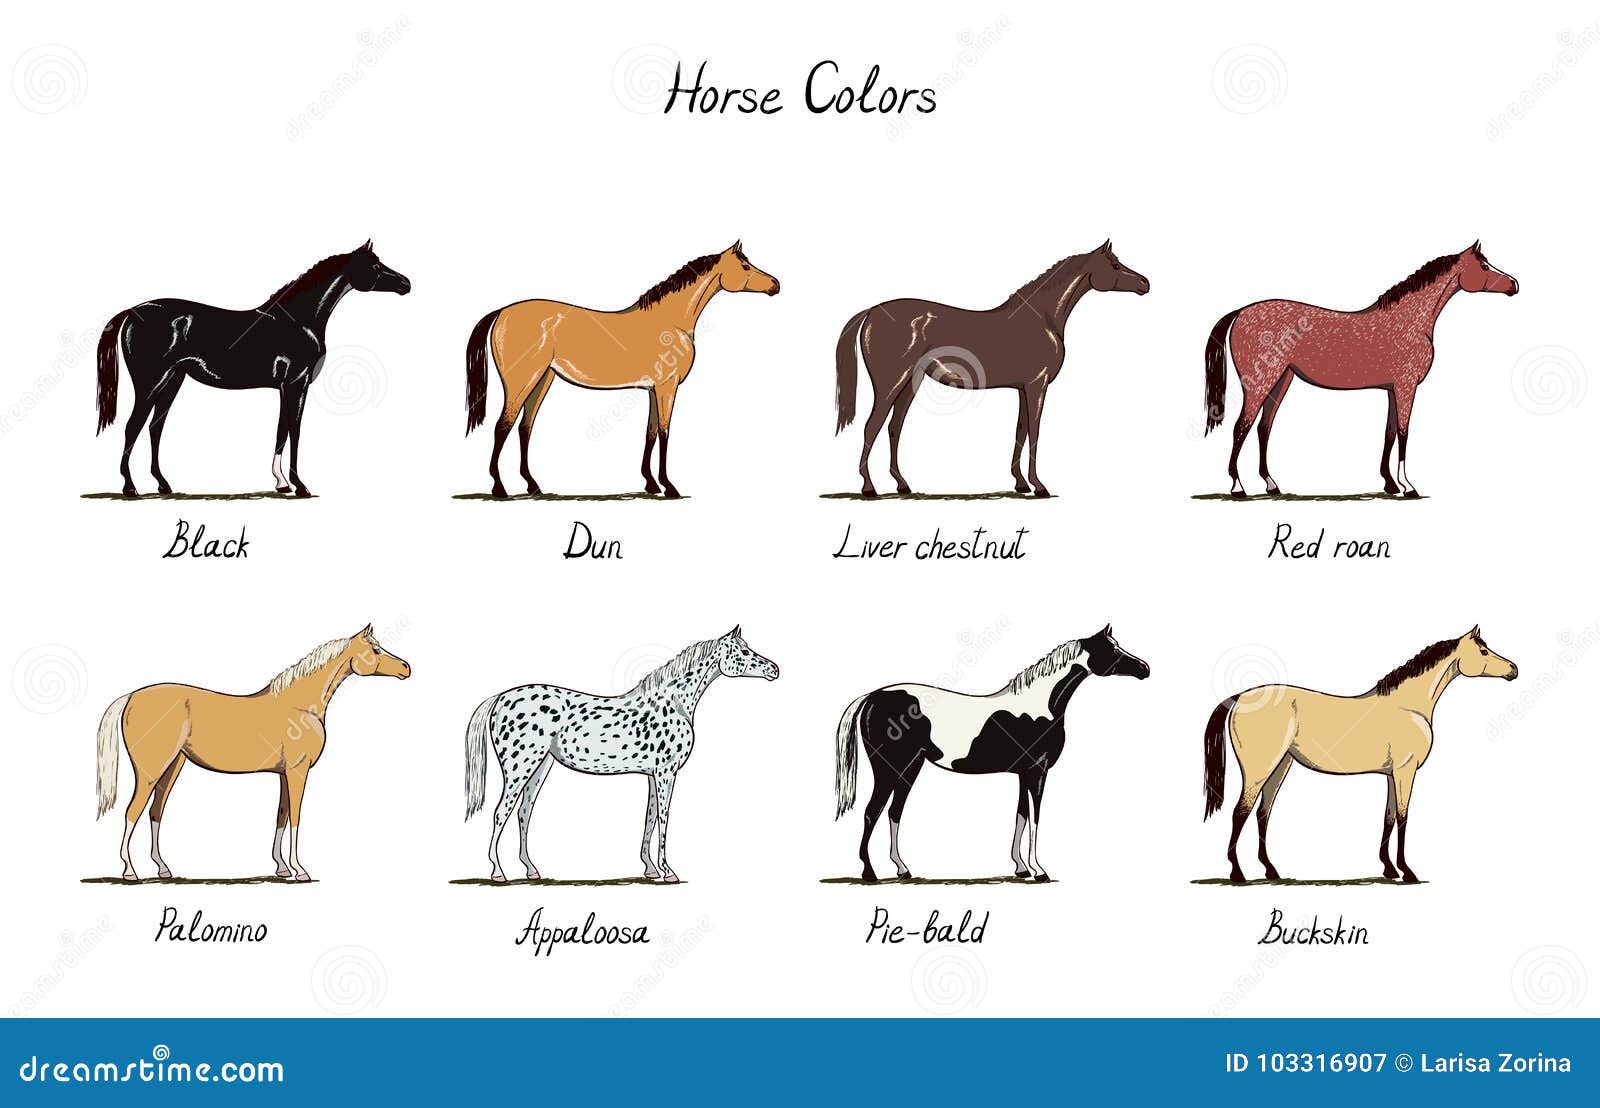 Как называется профессия где лошади. Цвета лошадей. Какого цвета лошадь. Цвета лошадей названия. Окрасы лошадей.